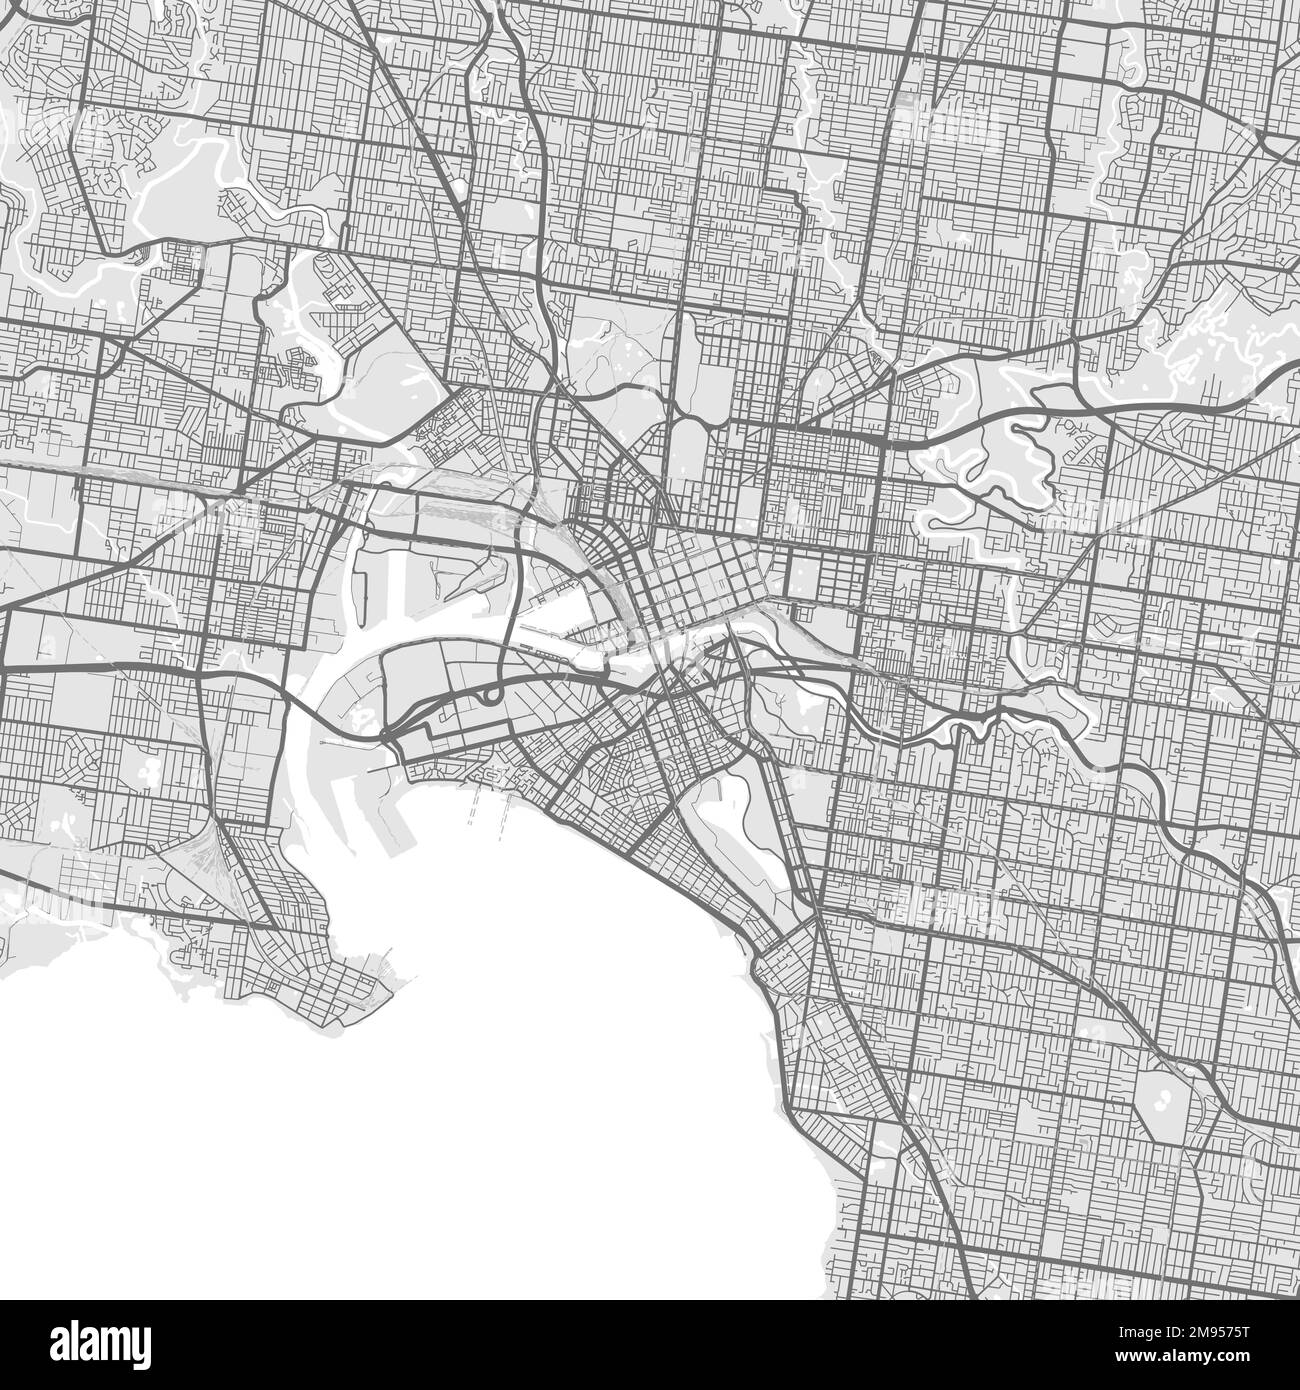 Stadtplan von Melbourne. Detaillierte Vektorkarte der Stadtverwaltung von Melbourne. Stadtbild-Poster mit Blick auf die Metropolitane Aria. Dunkles Land mit weißen Straßen, Straßen Stock Vektor